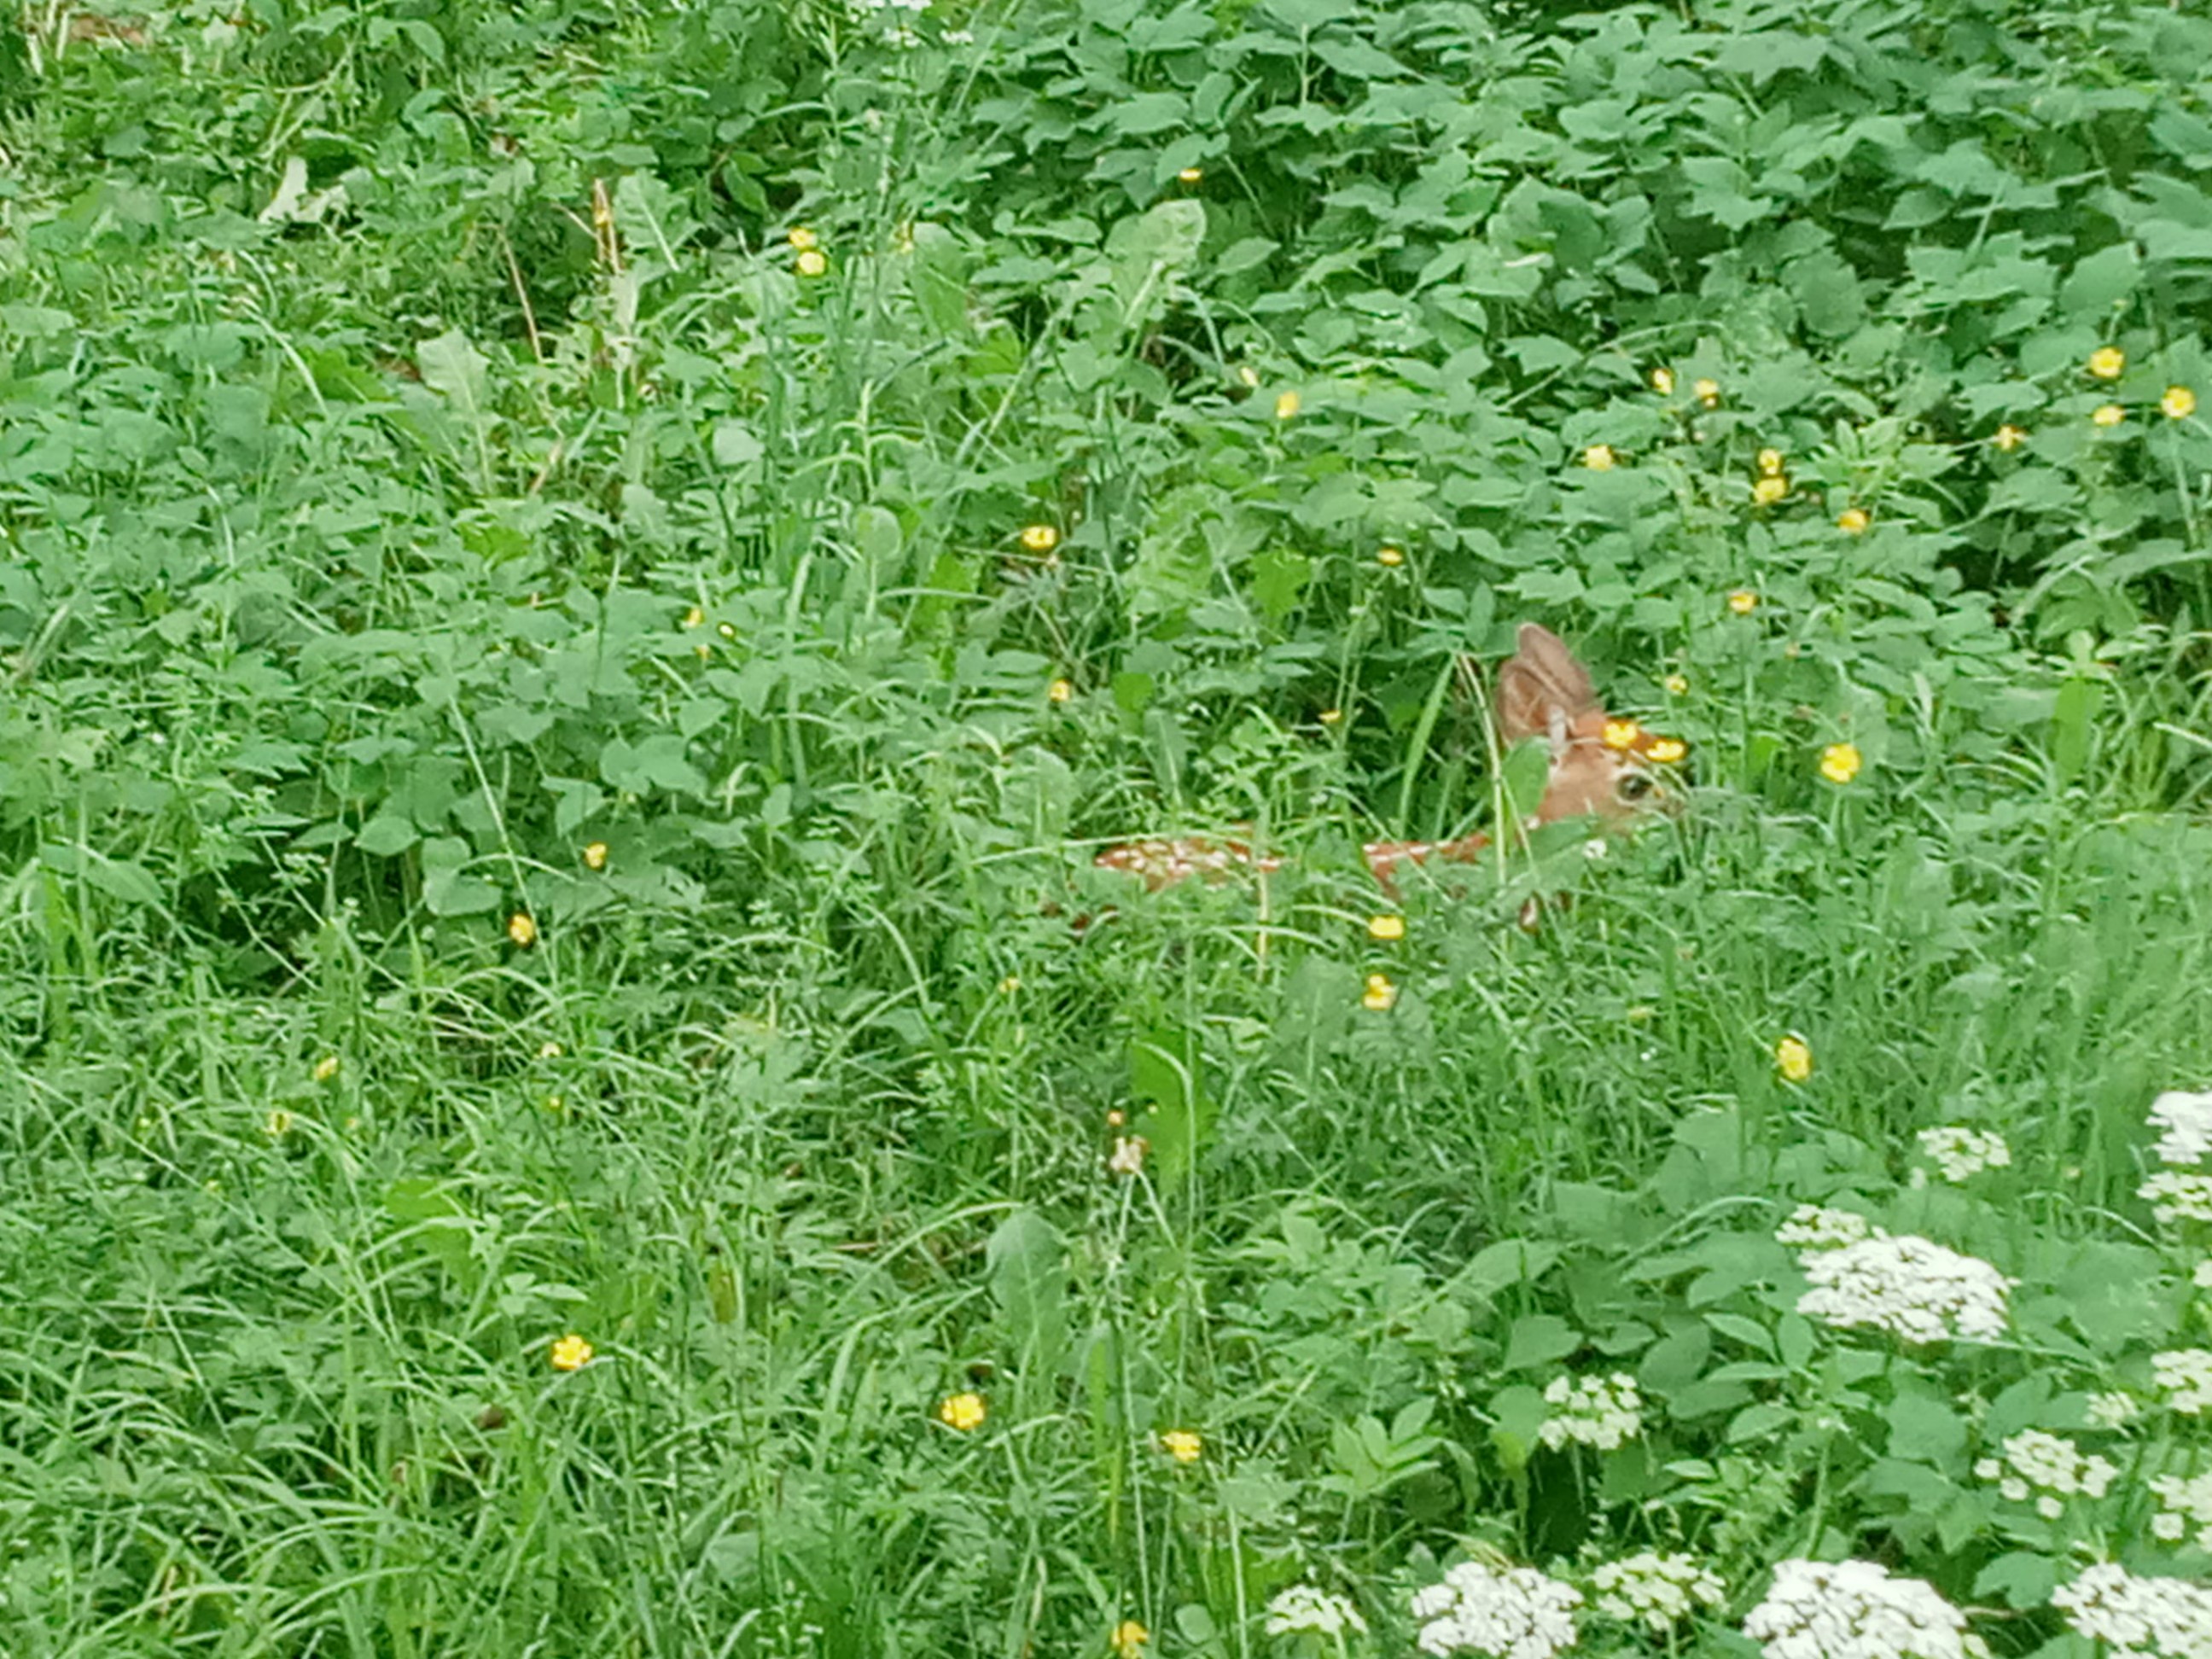 Baby deer in grass